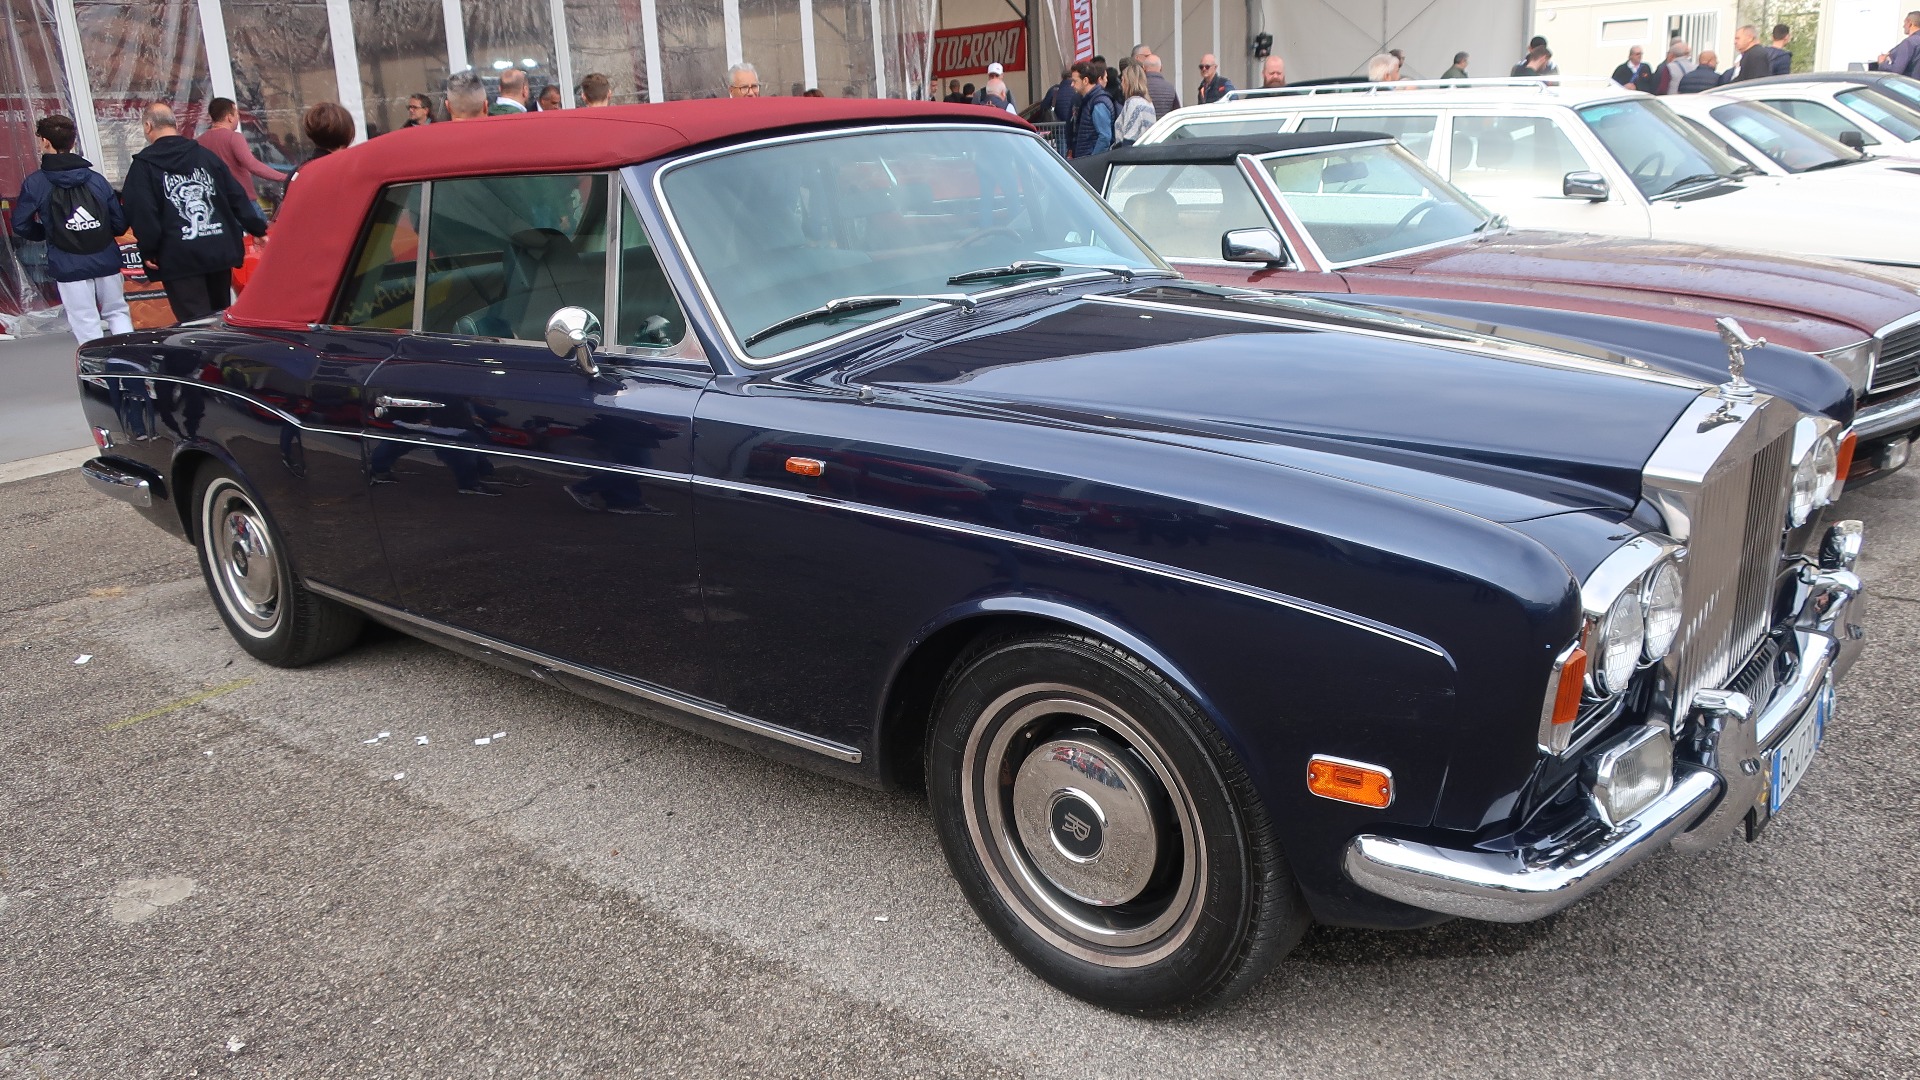 Nydelig 1971 Rolls-Royce Mulliner Park Ward til salgs for 55.000 Euro.